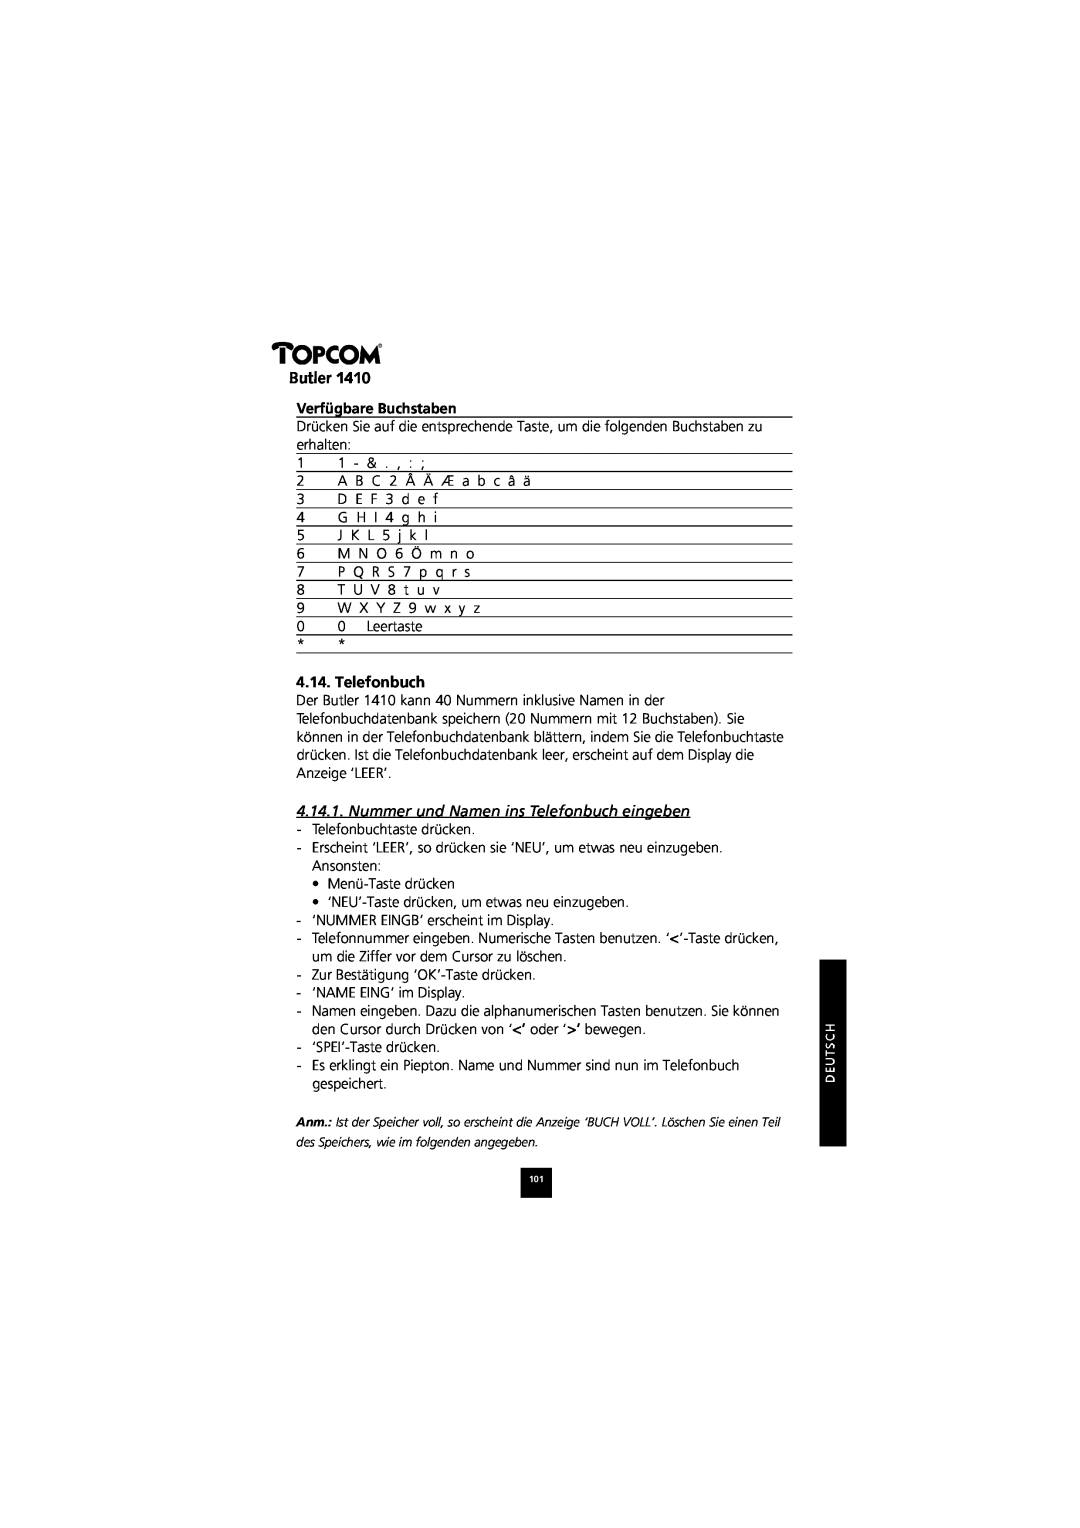 Topcom 1410 manual Verfügbare Buchstaben, Nummer und Namen ins Telefonbuch eingeben, Butler 